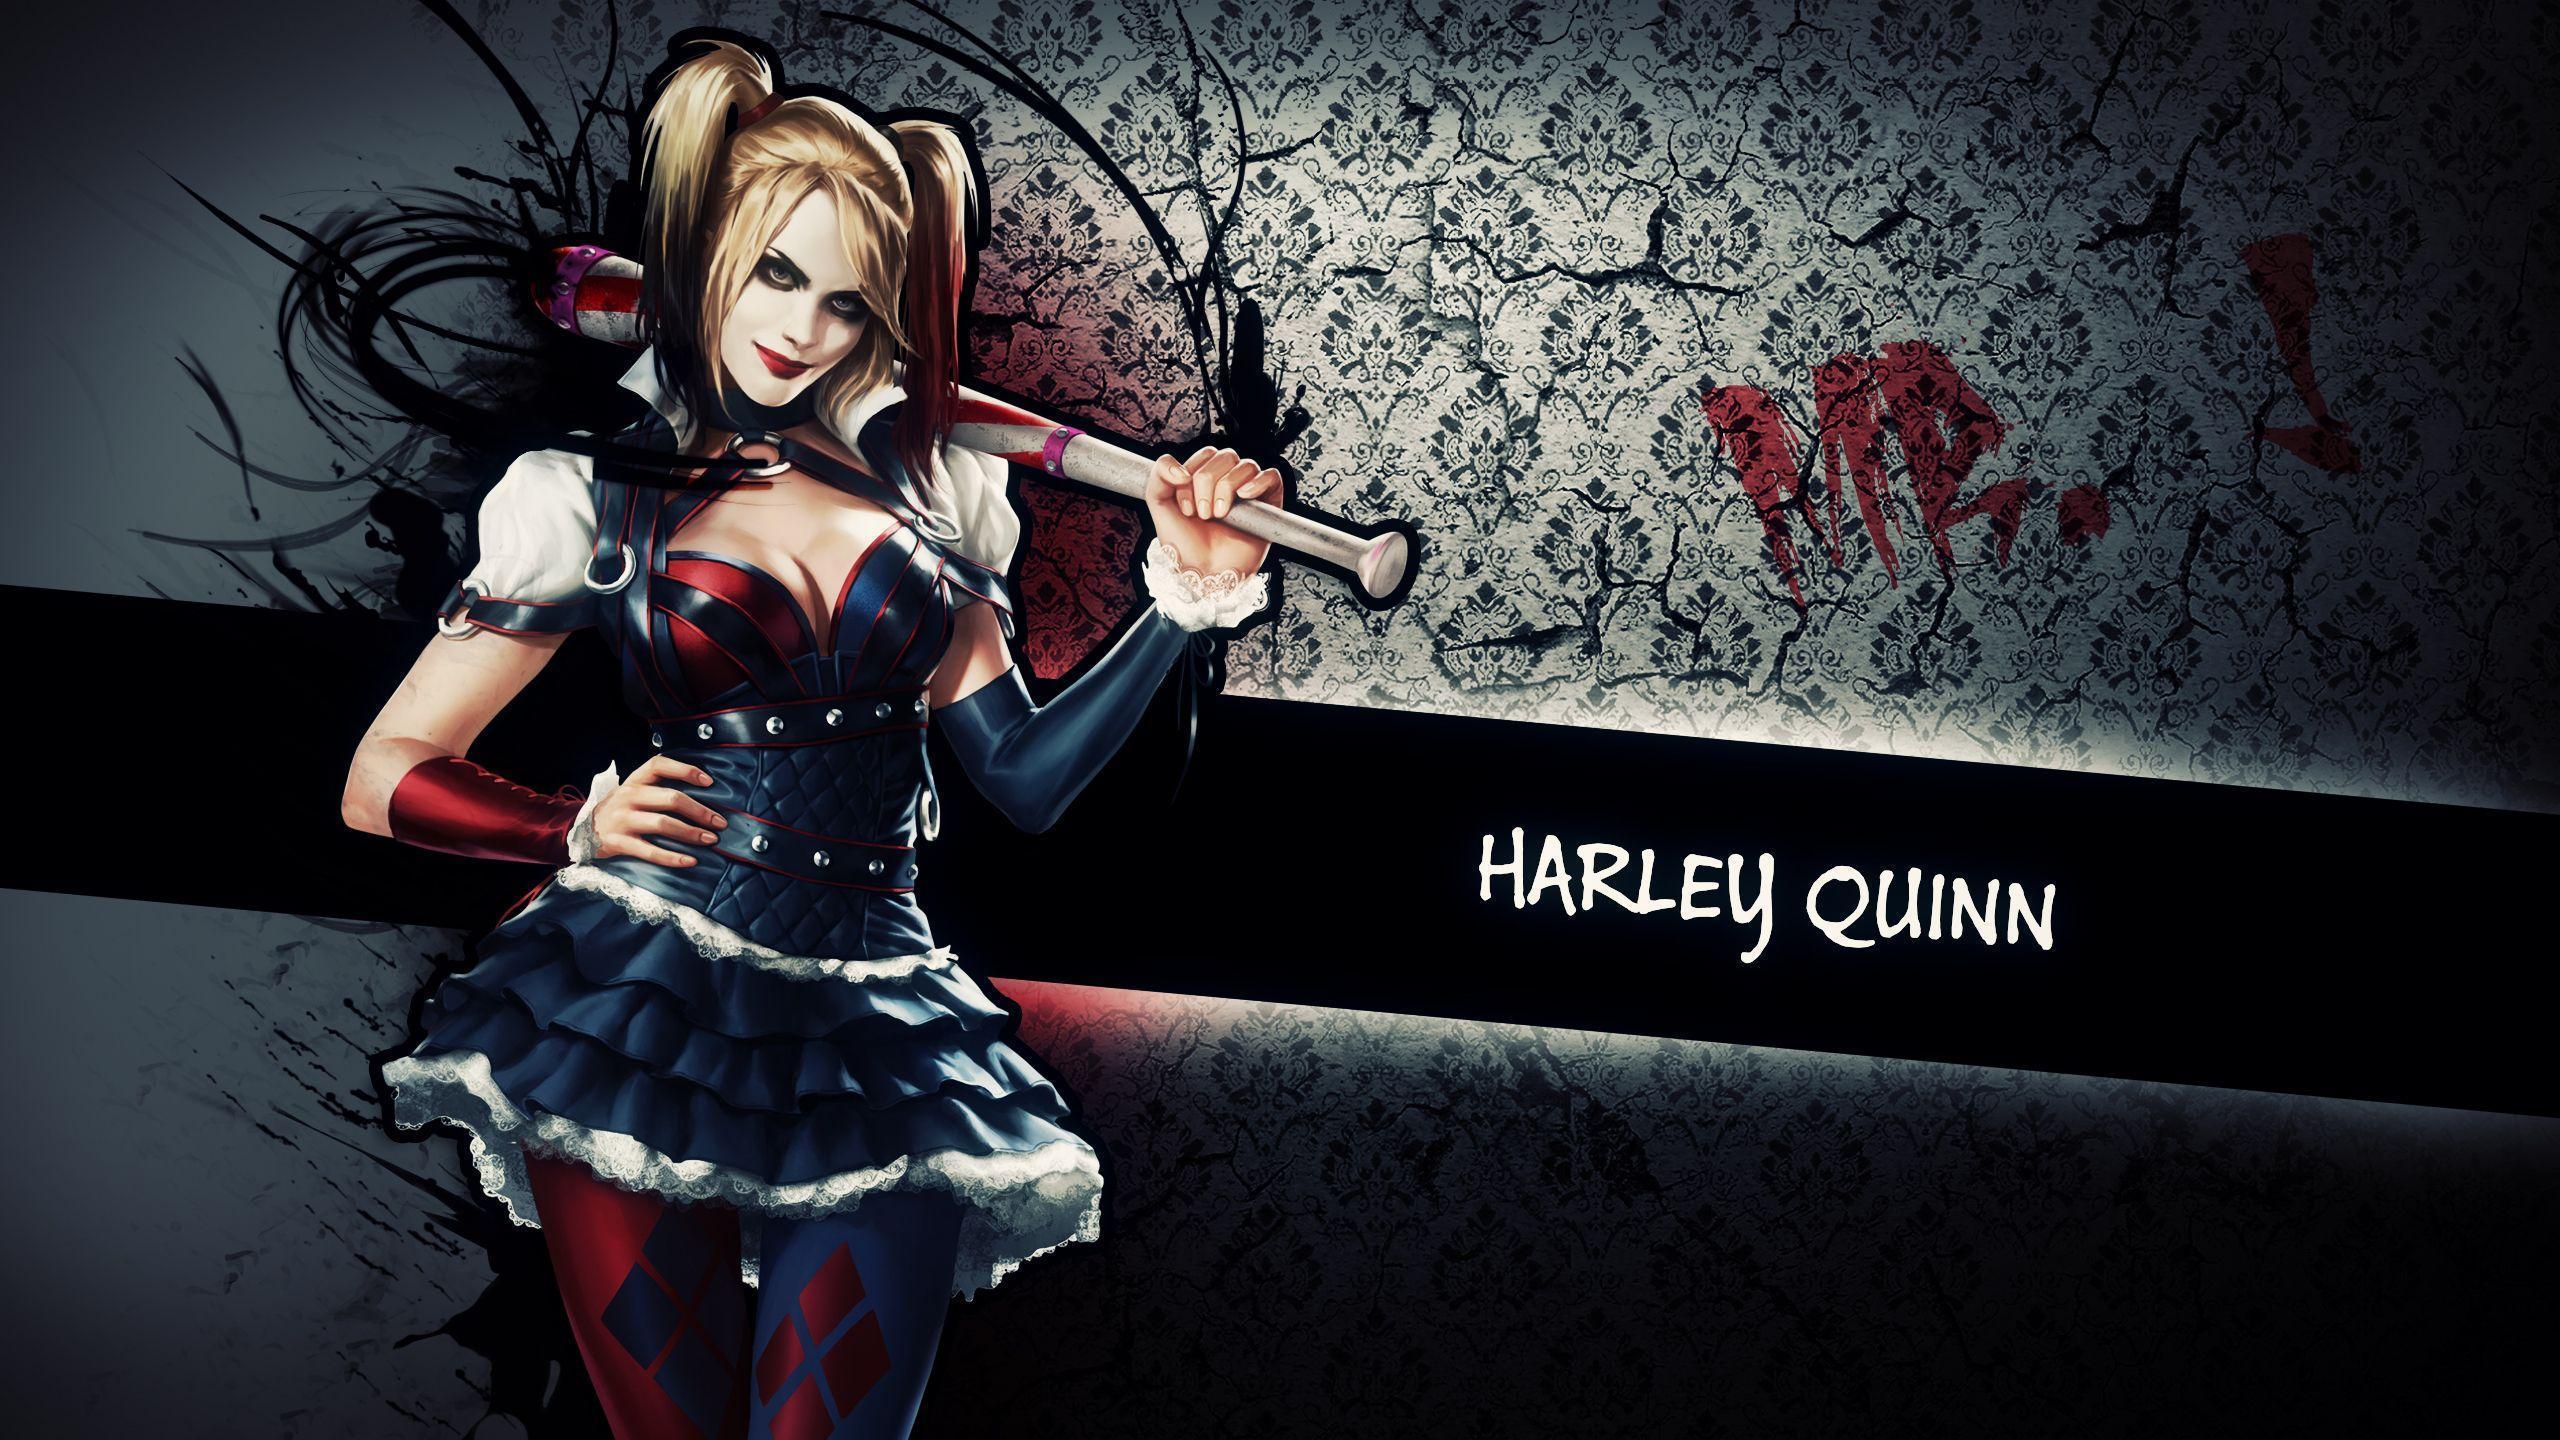 2560 x 1440 · jpeg - Harley Quinn Supervillain Wallpapers - Wallpaper Cave